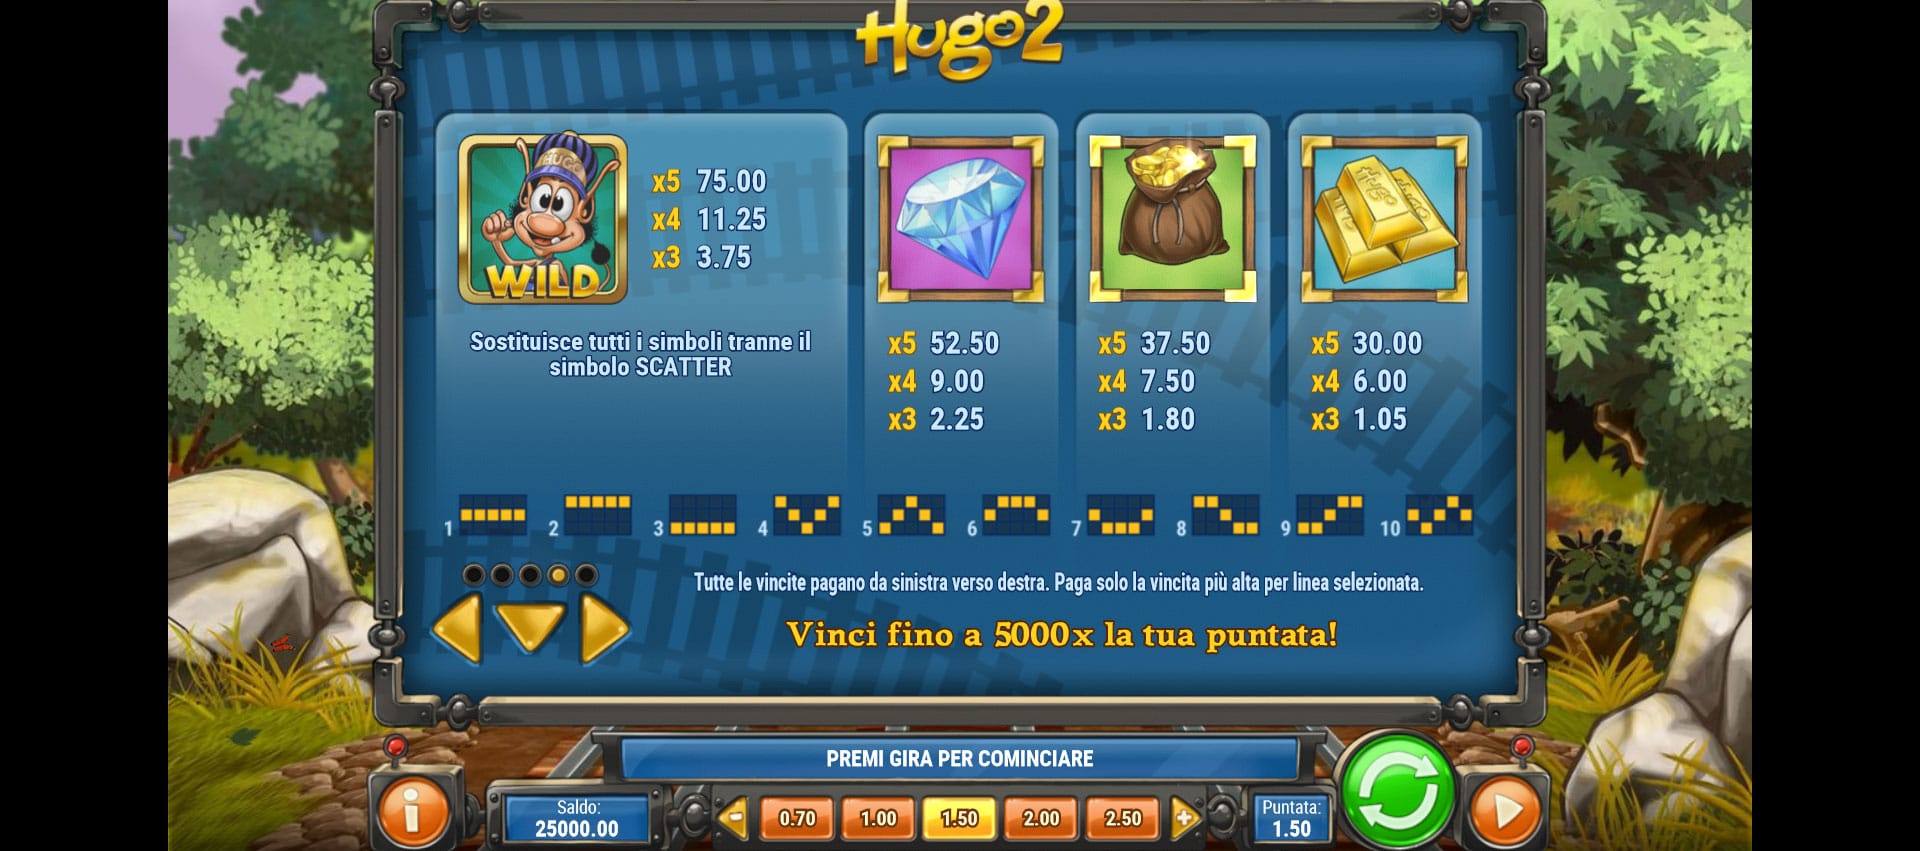 tabella delle vincite della slot machine hugo 2